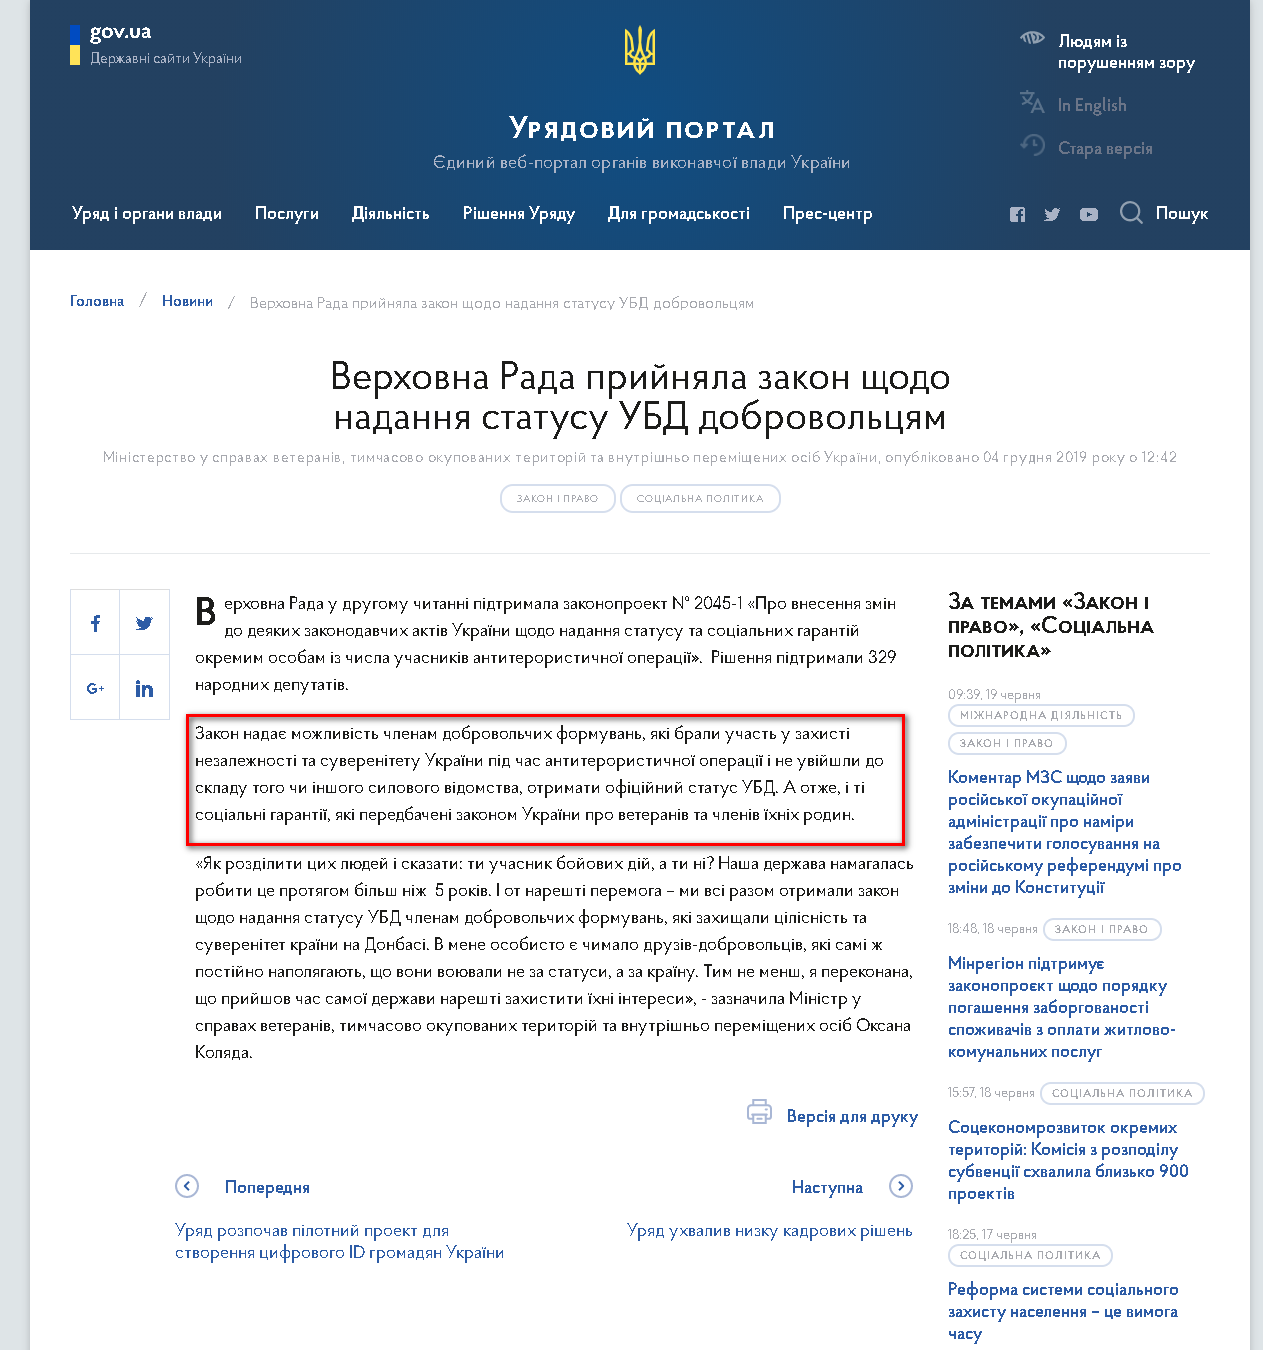 https://www.kmu.gov.ua/news/verhovna-rada-prijnyala-zakon-shchodo-nadannya-statusu-ubd-dobrovolcyam